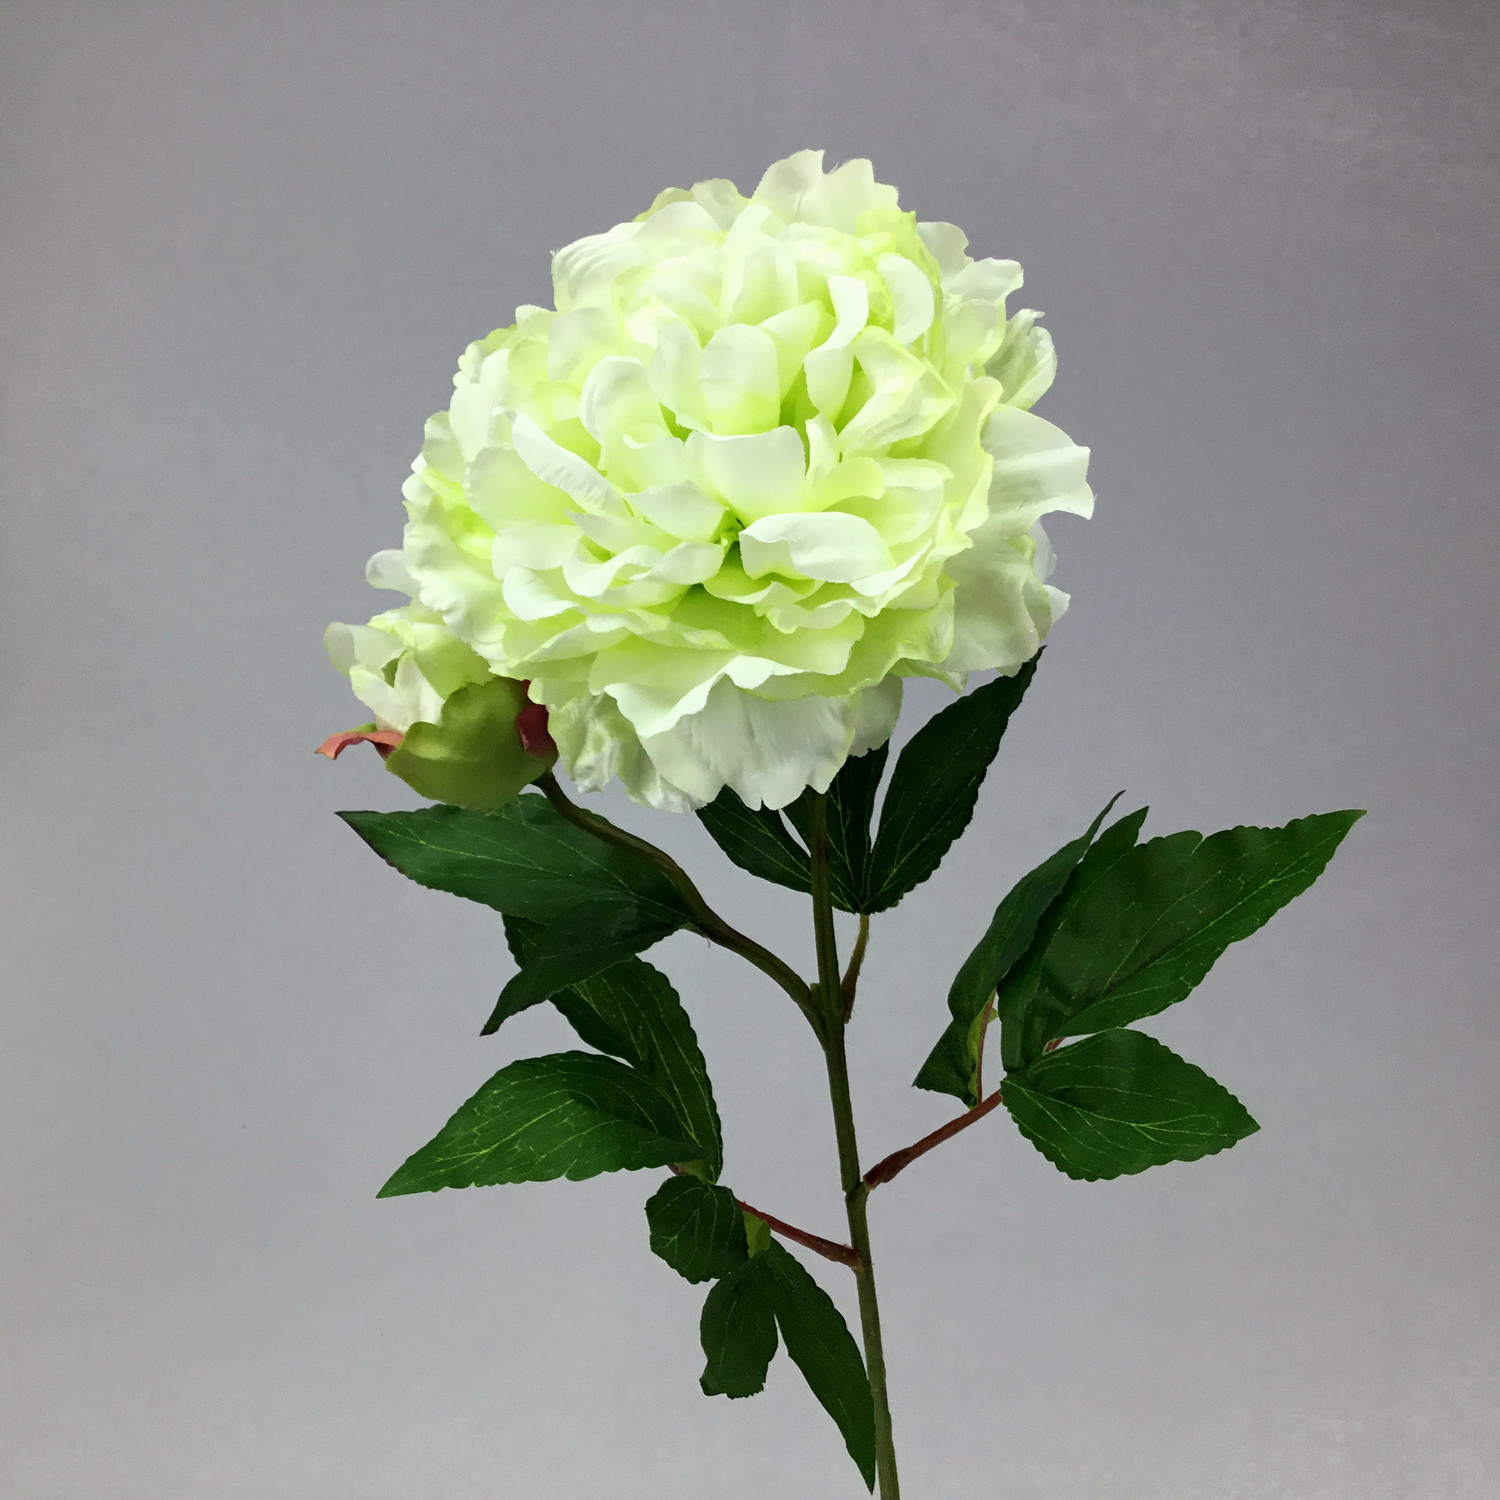 ดอกพีโอนีสีครีม ดอกไม้ประดับตกแต่งงานพิธีต่างๆ